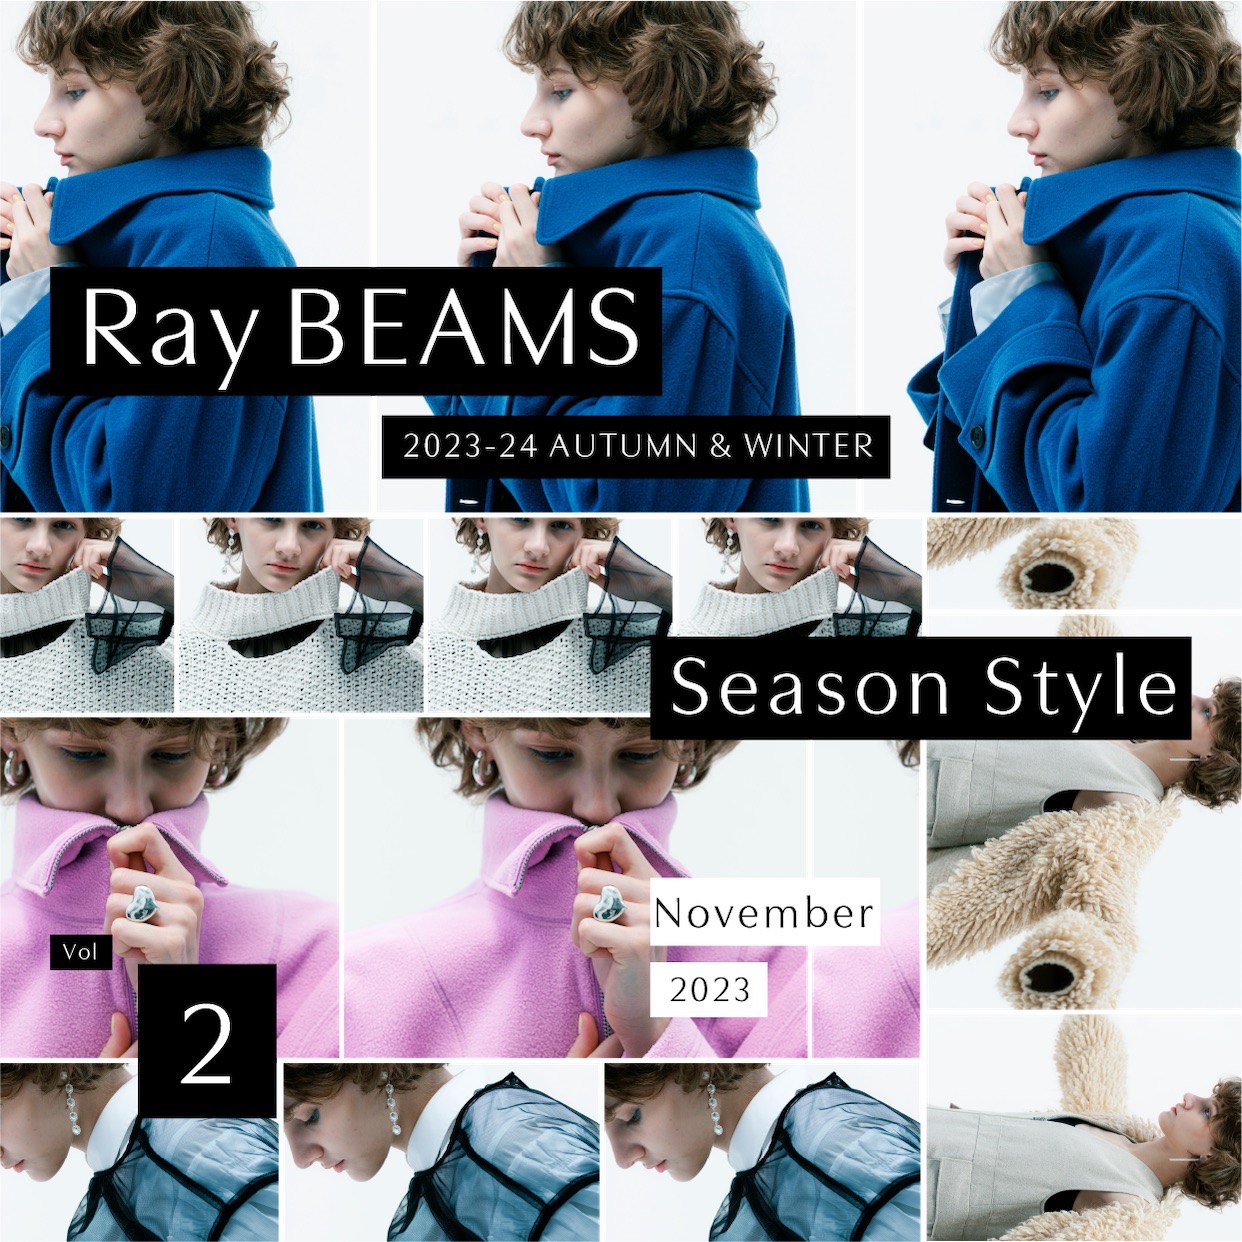 從未有兩天是相同的。利用衣著，綻放嶄新風采｜Ray BEAMS 2023-24 AUTUMN & WINTER Season Style vol.2